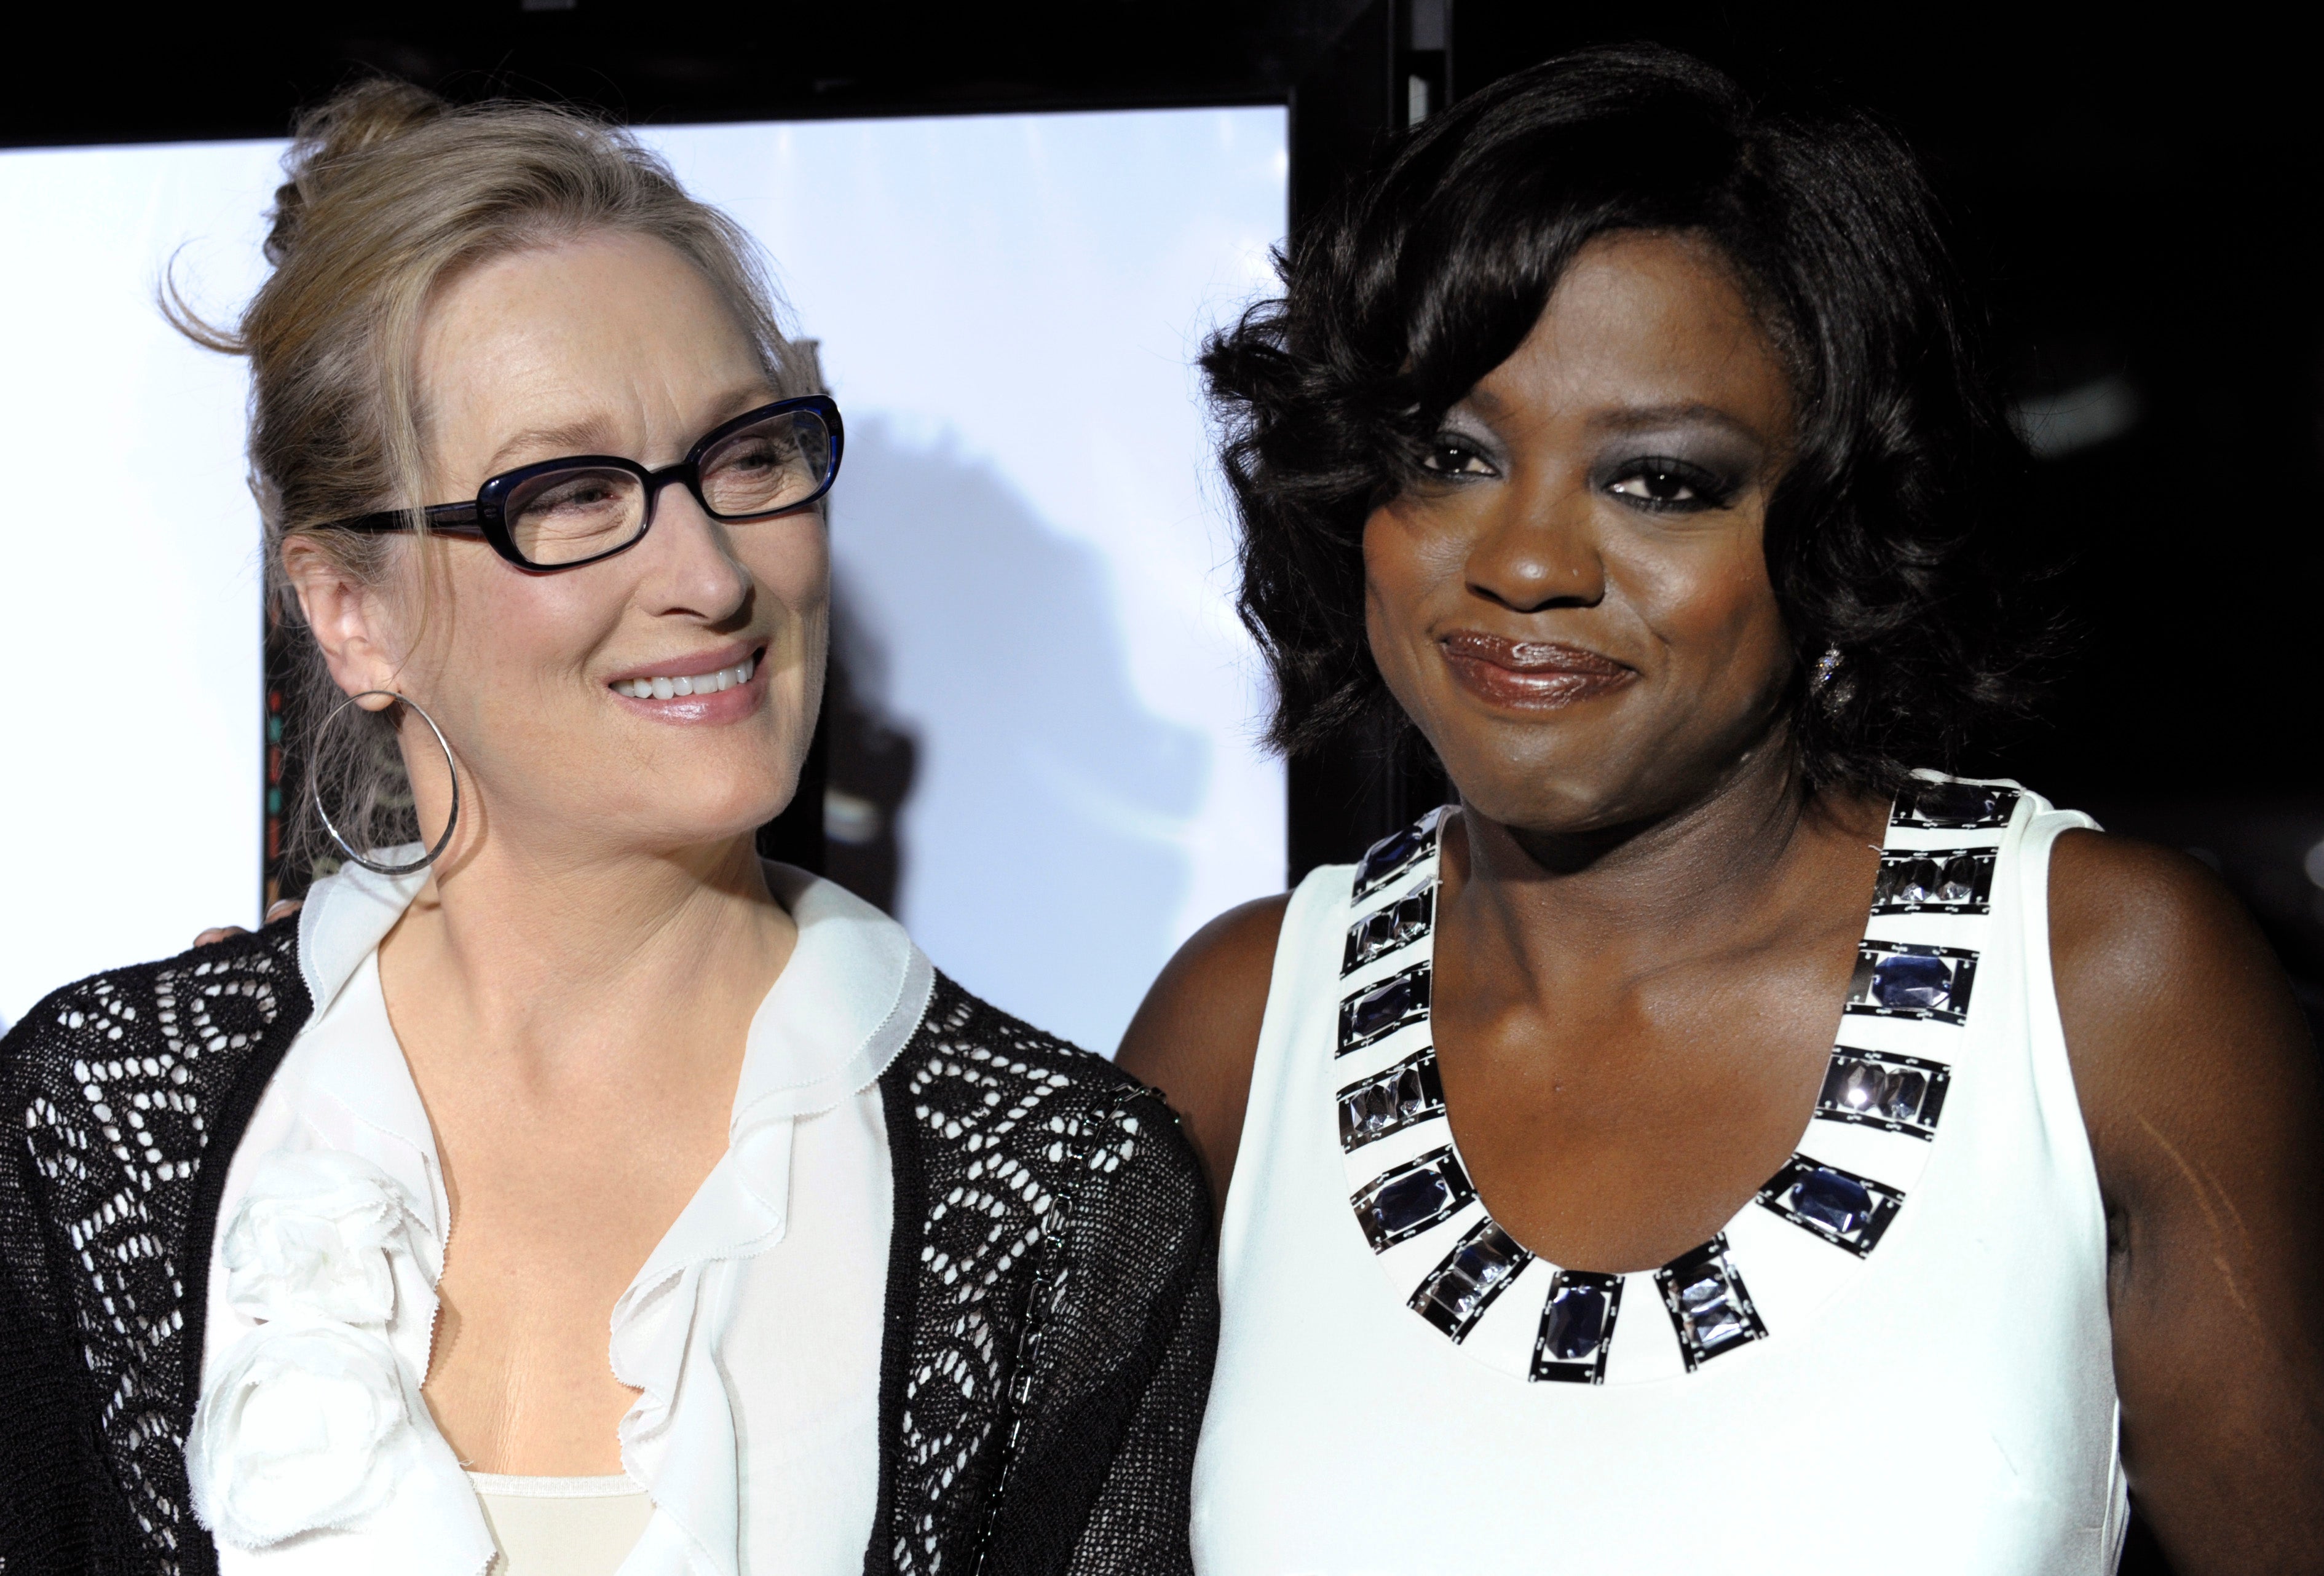 Meryl Streep Donates $10K to School in Viola Davis' Honor